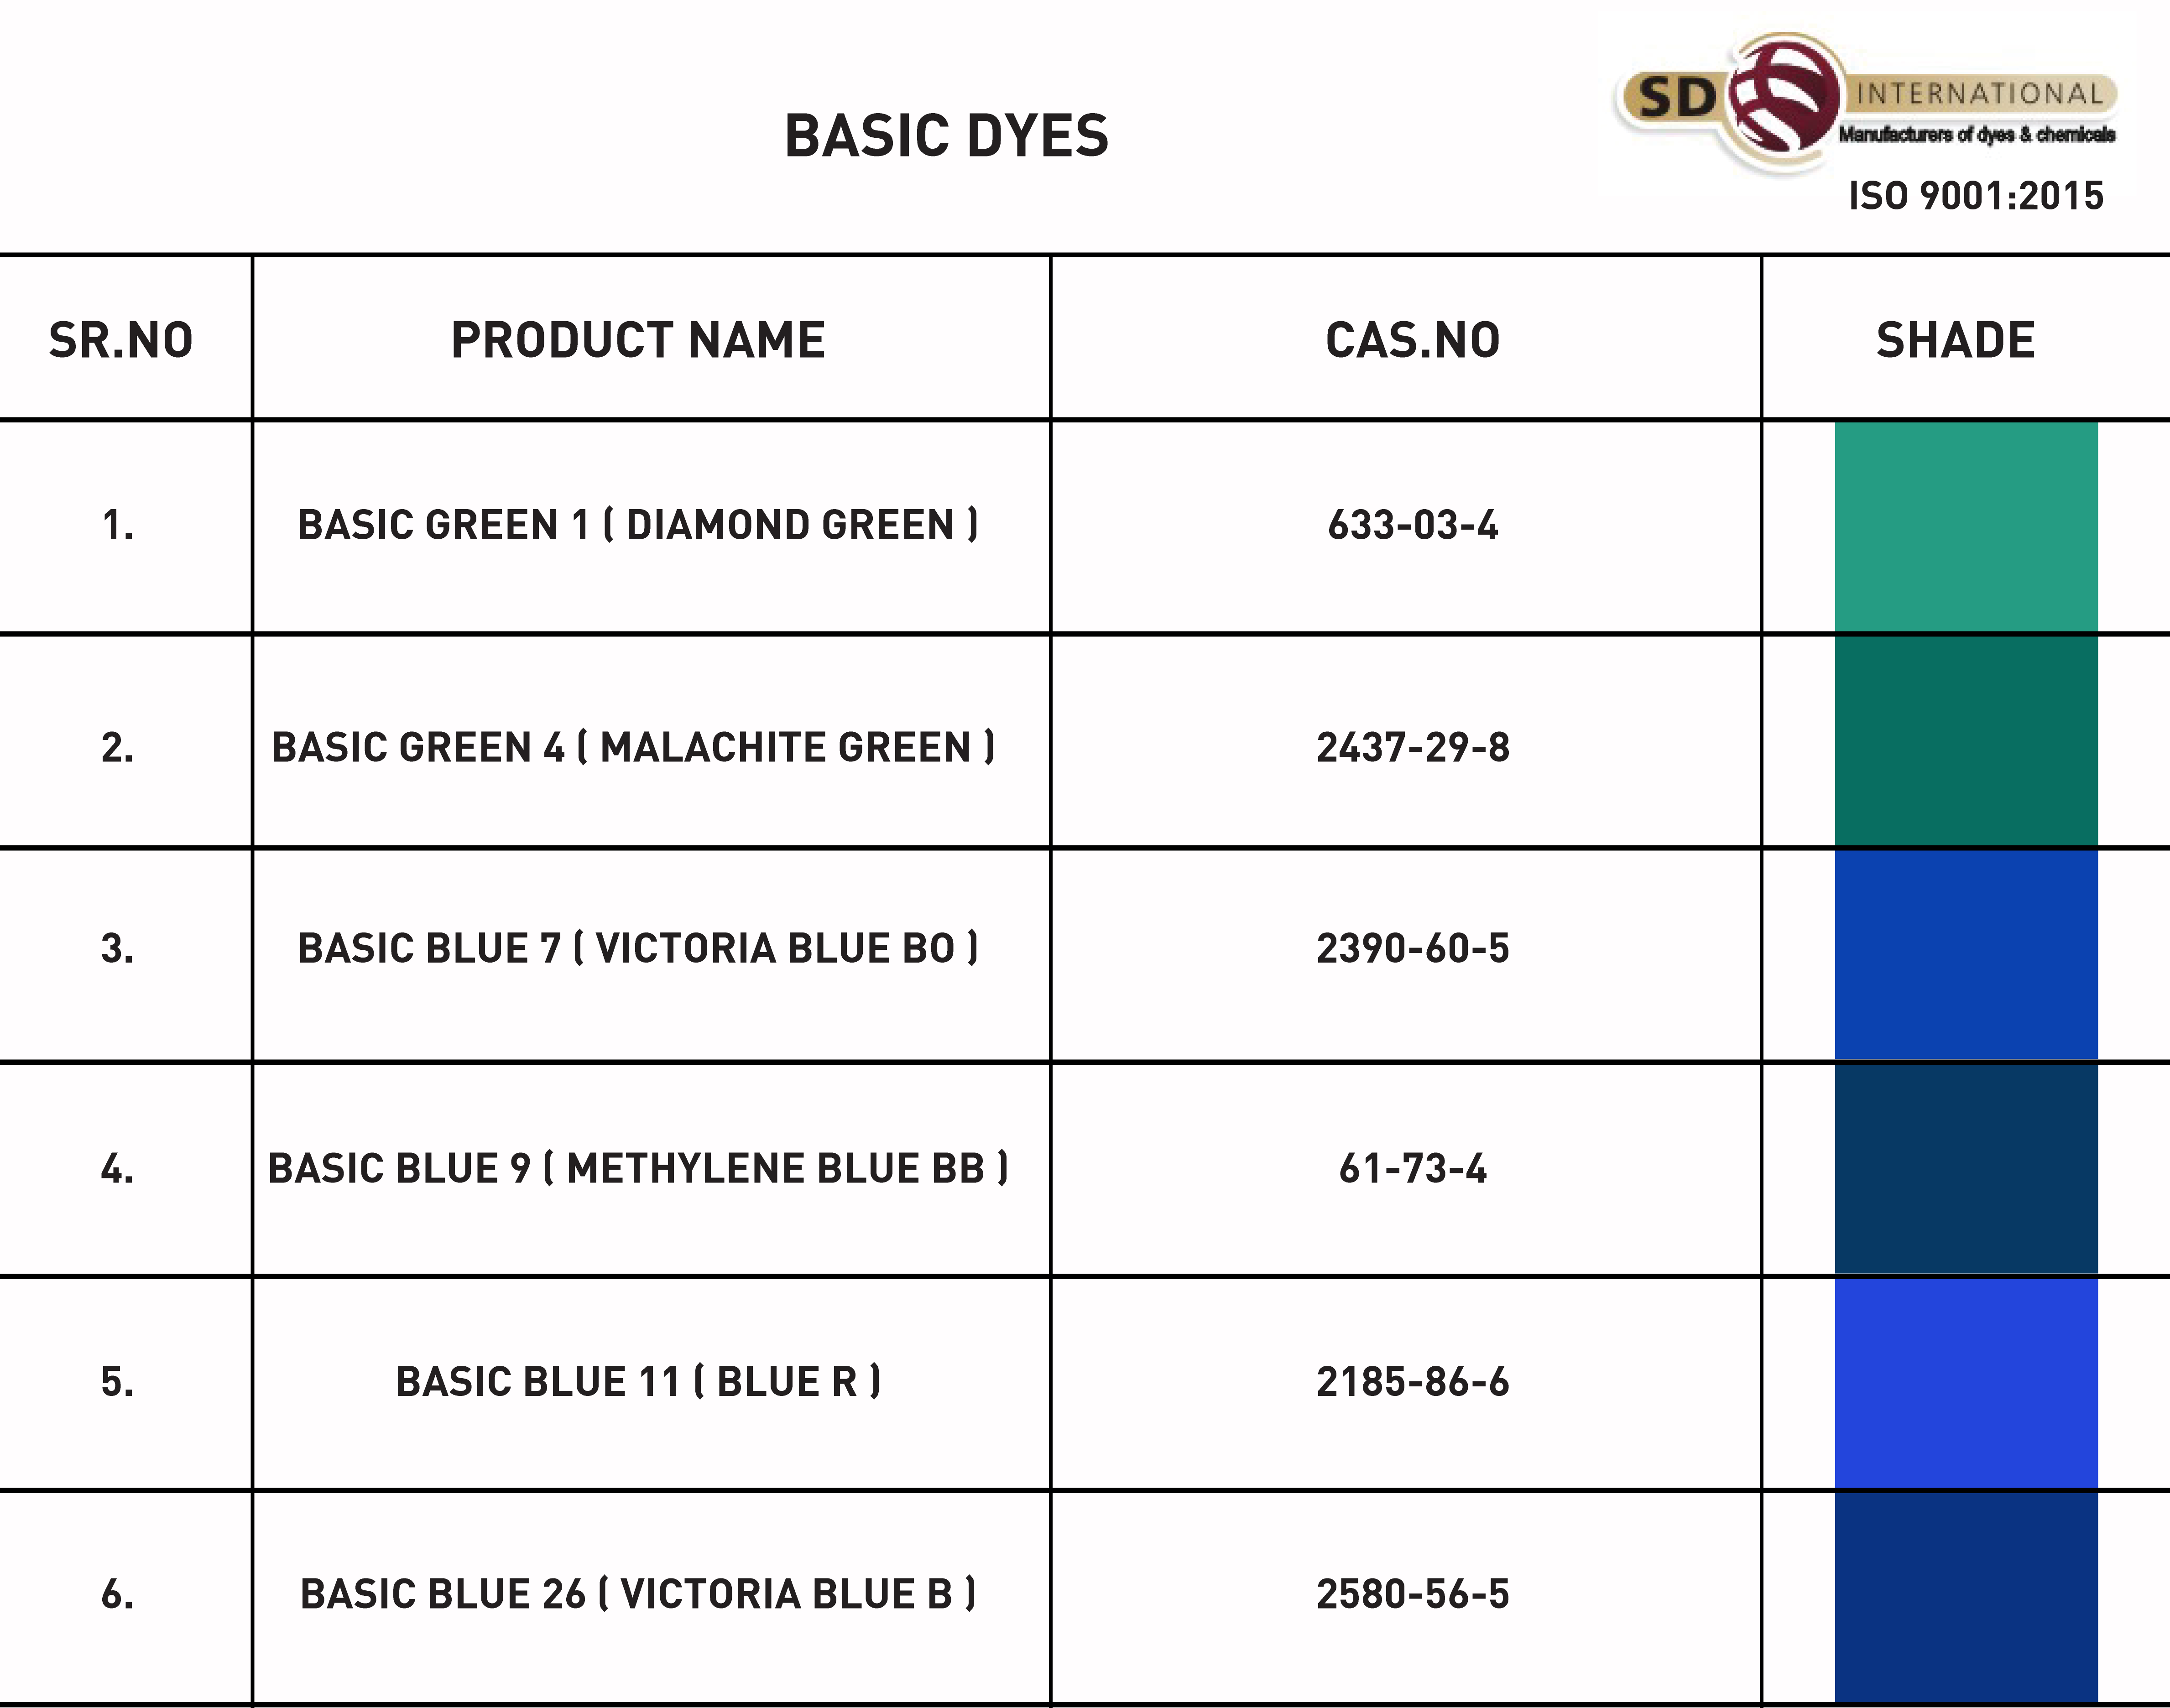 Basic Dyes